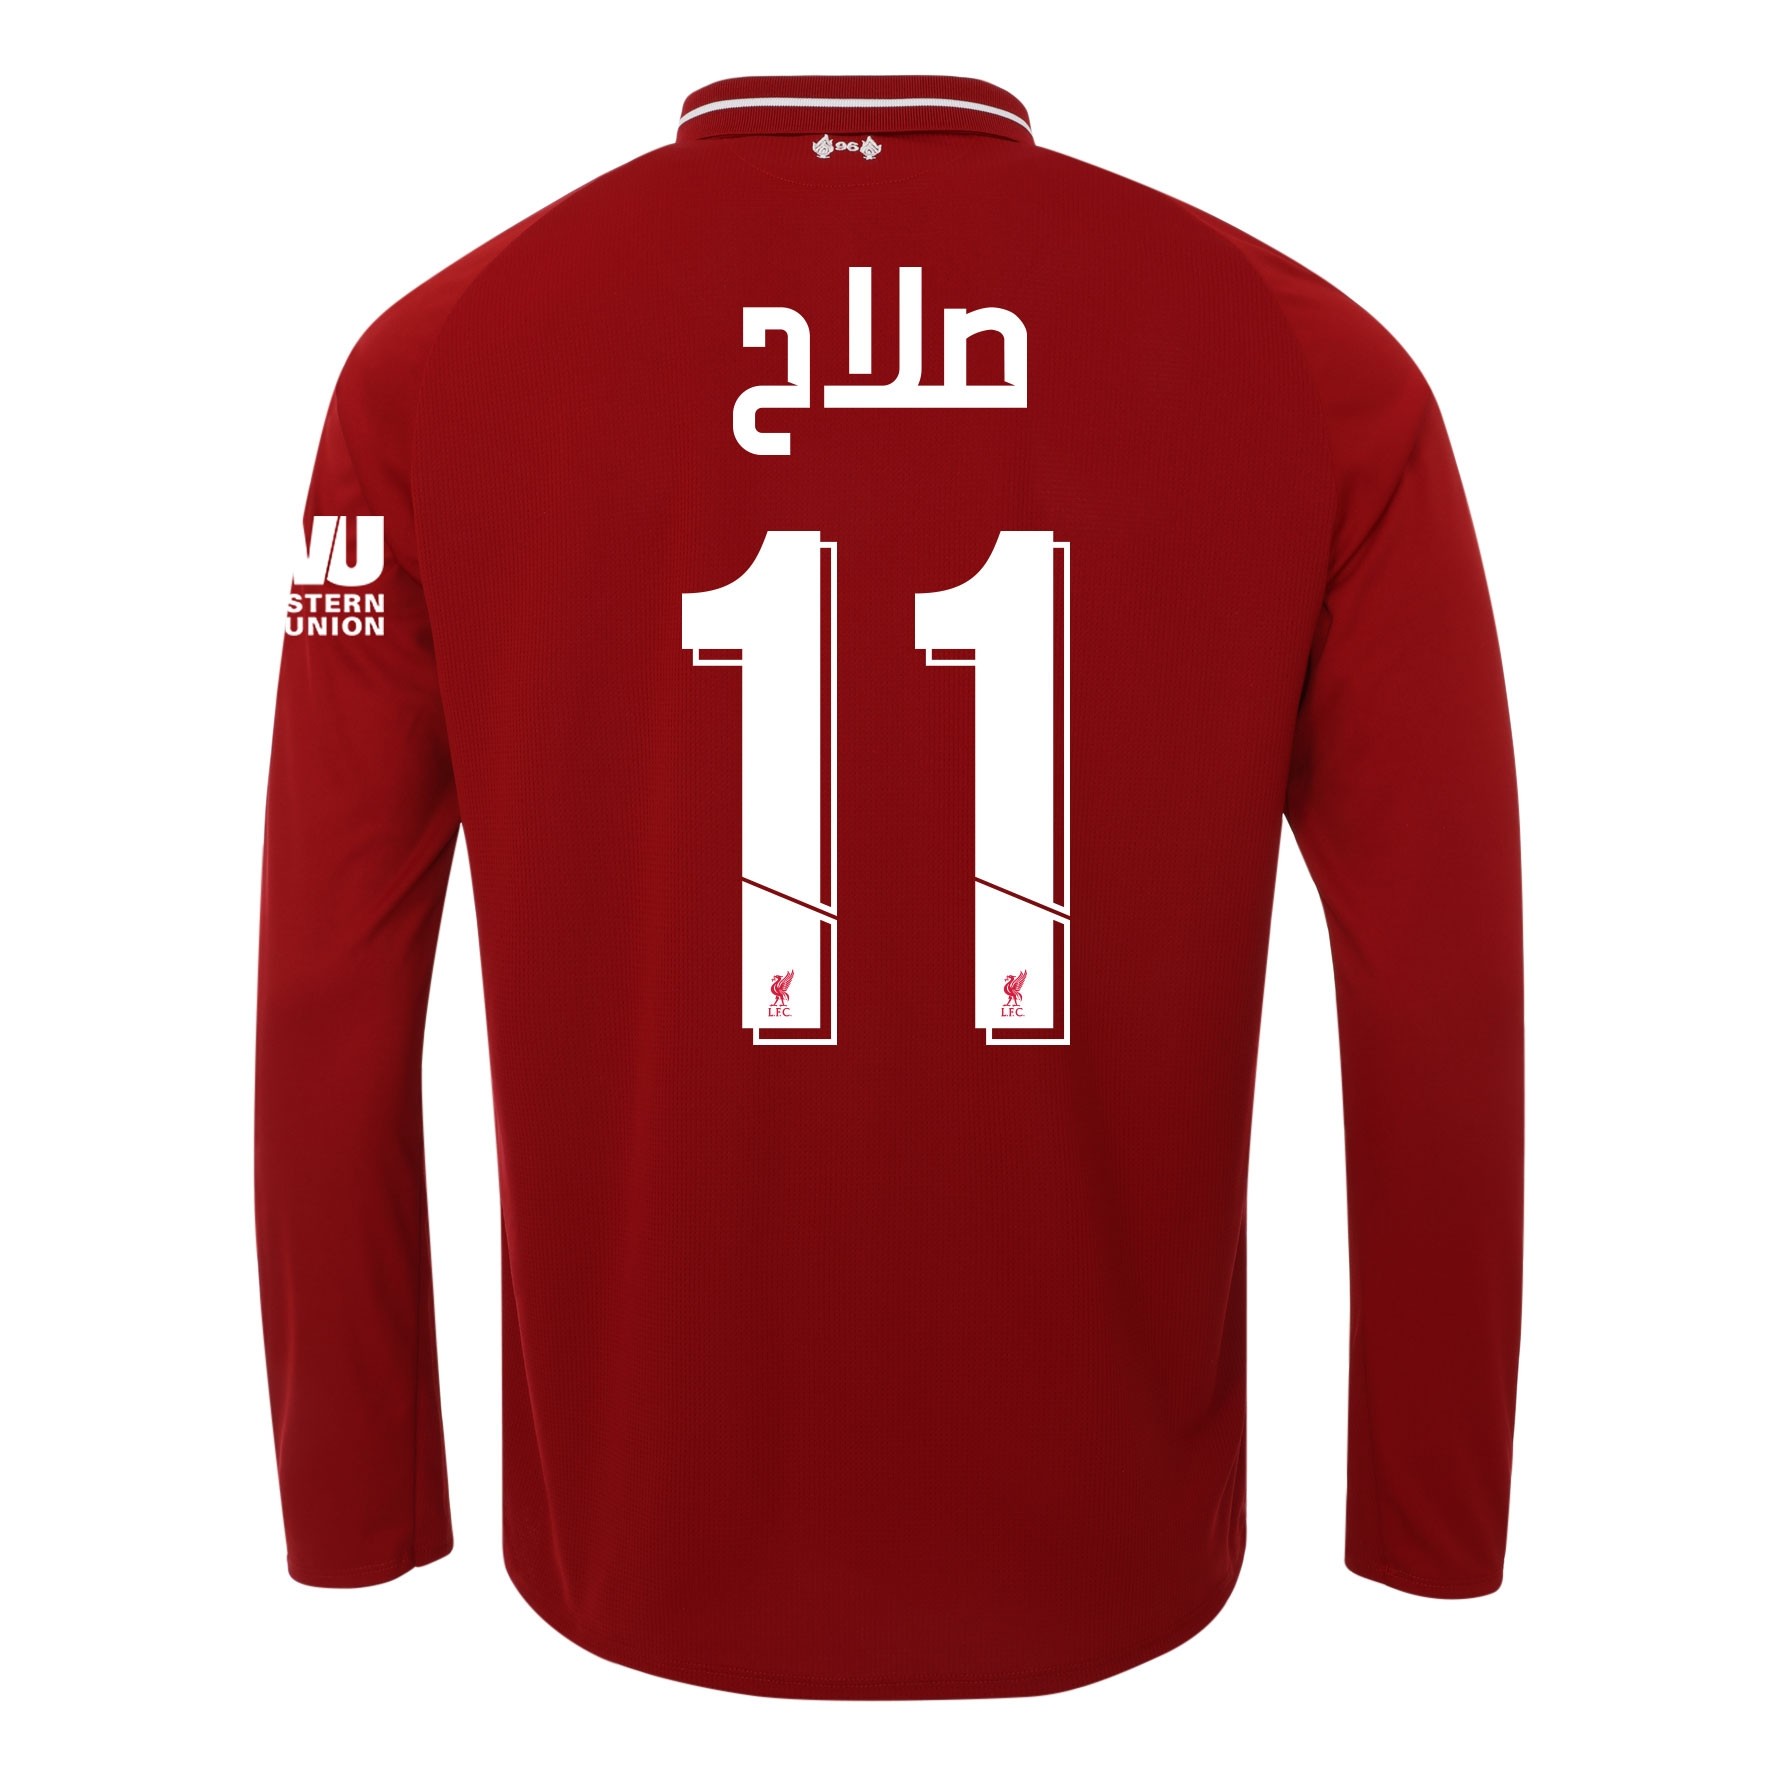 LFC Junior Long Sleeve Home Shirt 18/19 - Salah